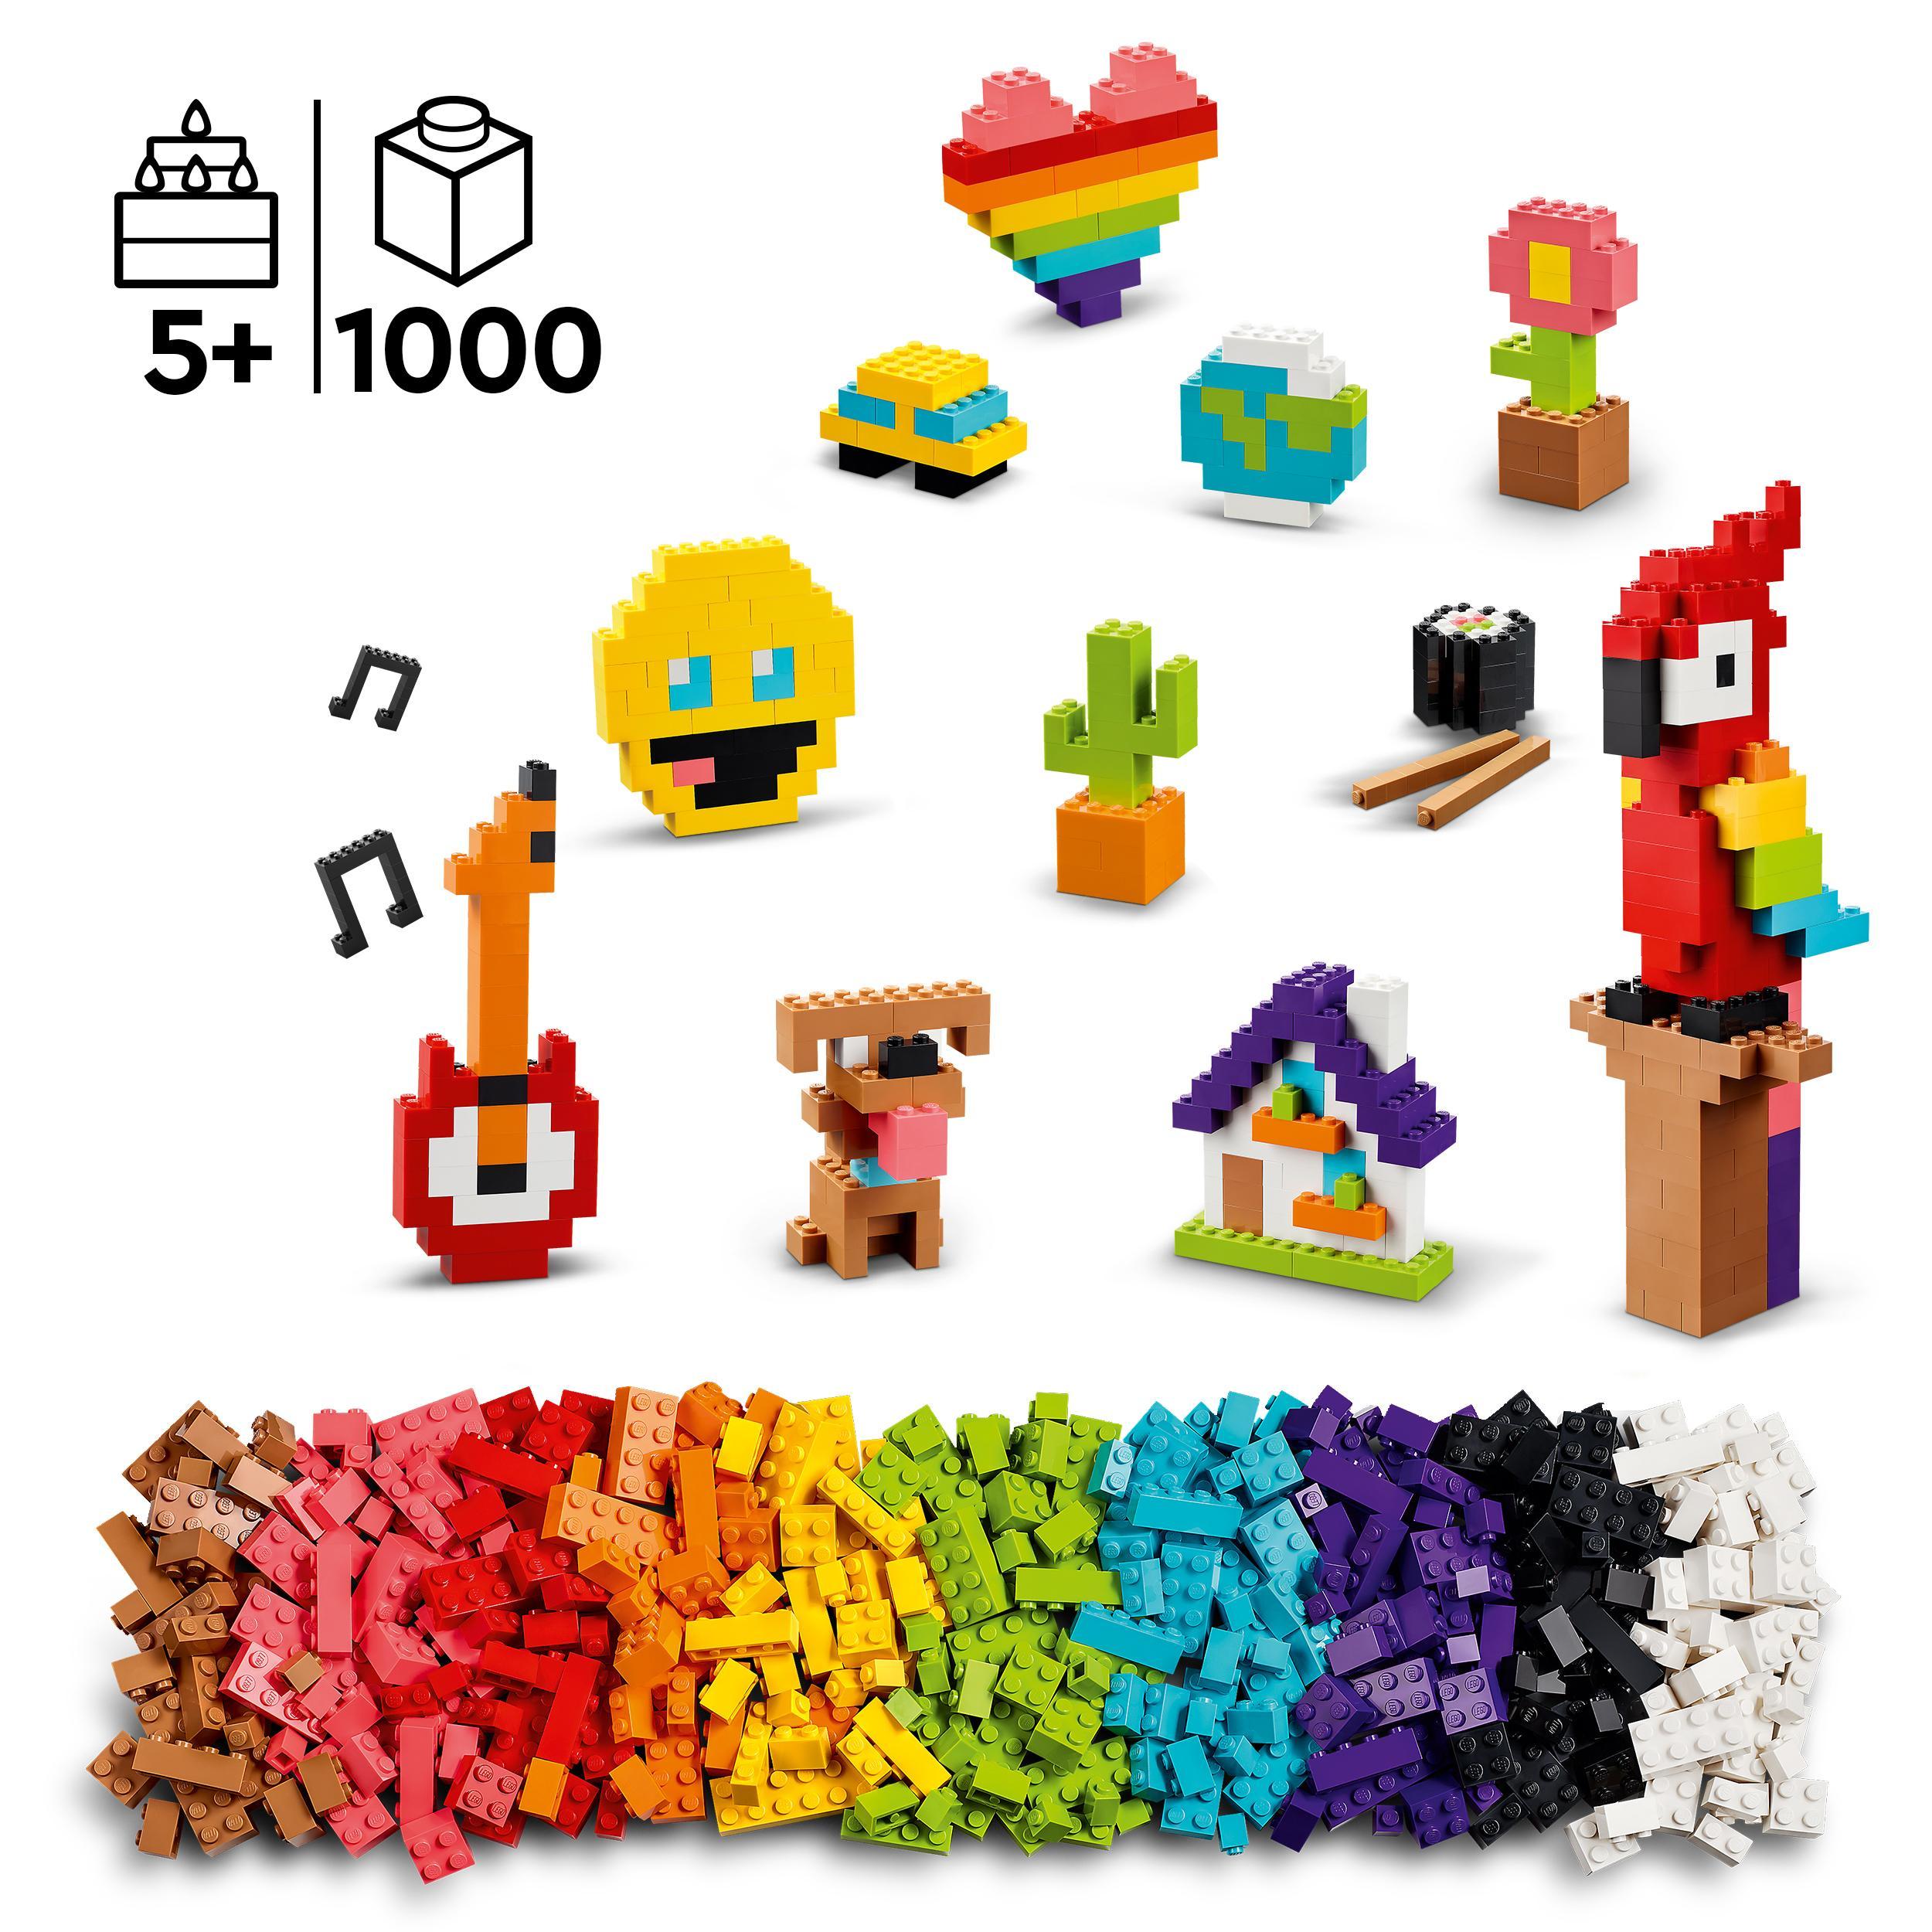 Lego classic 11030 tanti tanti mattoncini, set di costruzioni con emoji sorridente e altro, regalo creativo per bambini 5+ - LEGO CLASSIC